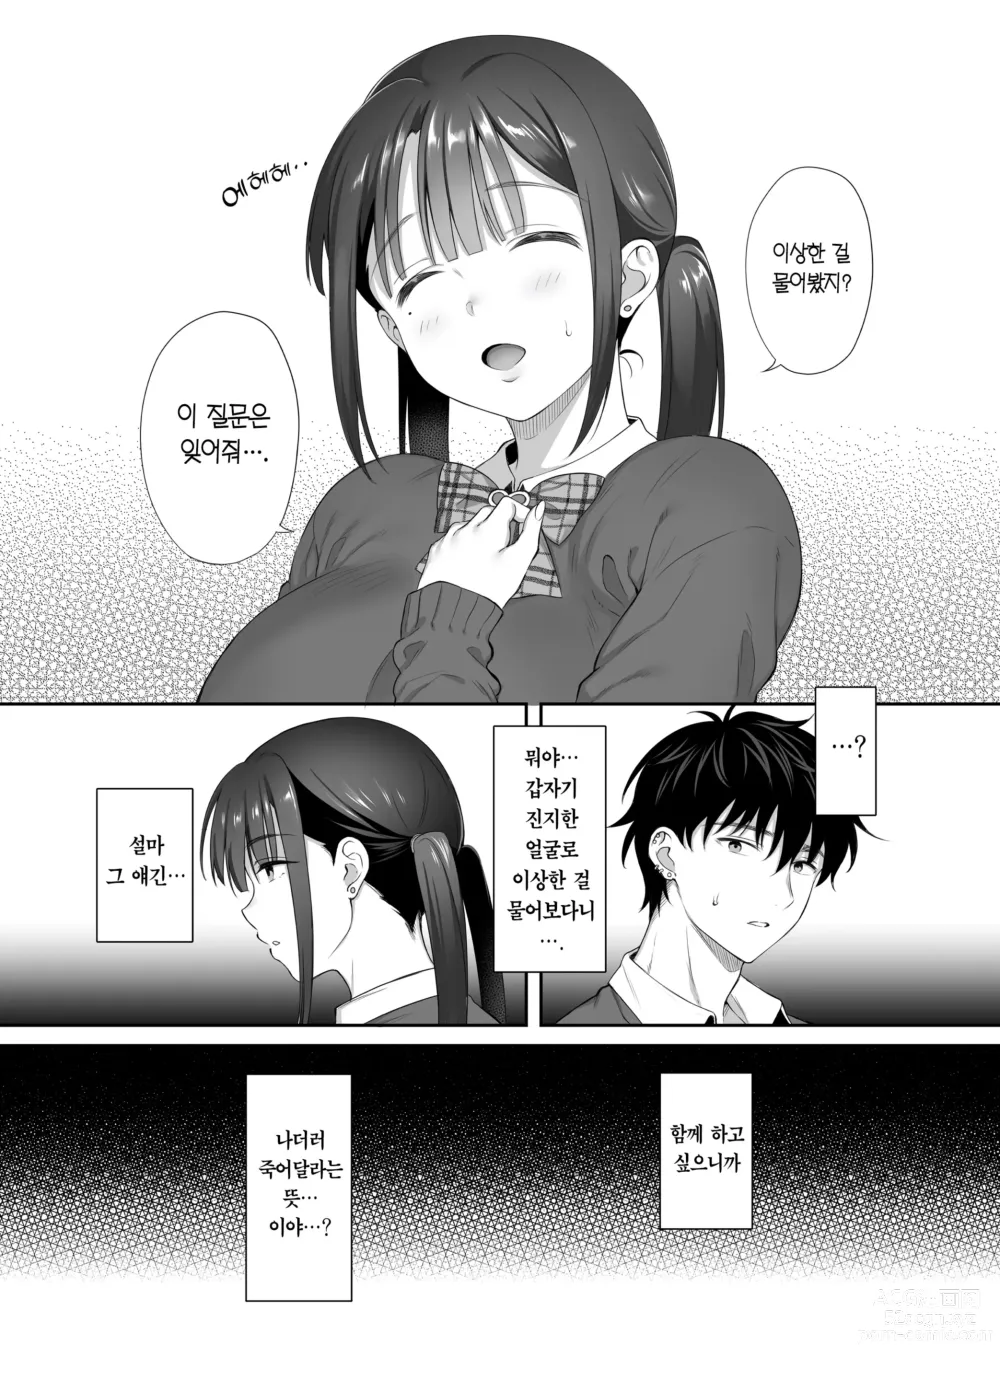 Page 52 of doujinshi 폐허에서 지뢰녀랑 밤새 질내사정 섹스한 이야기 2